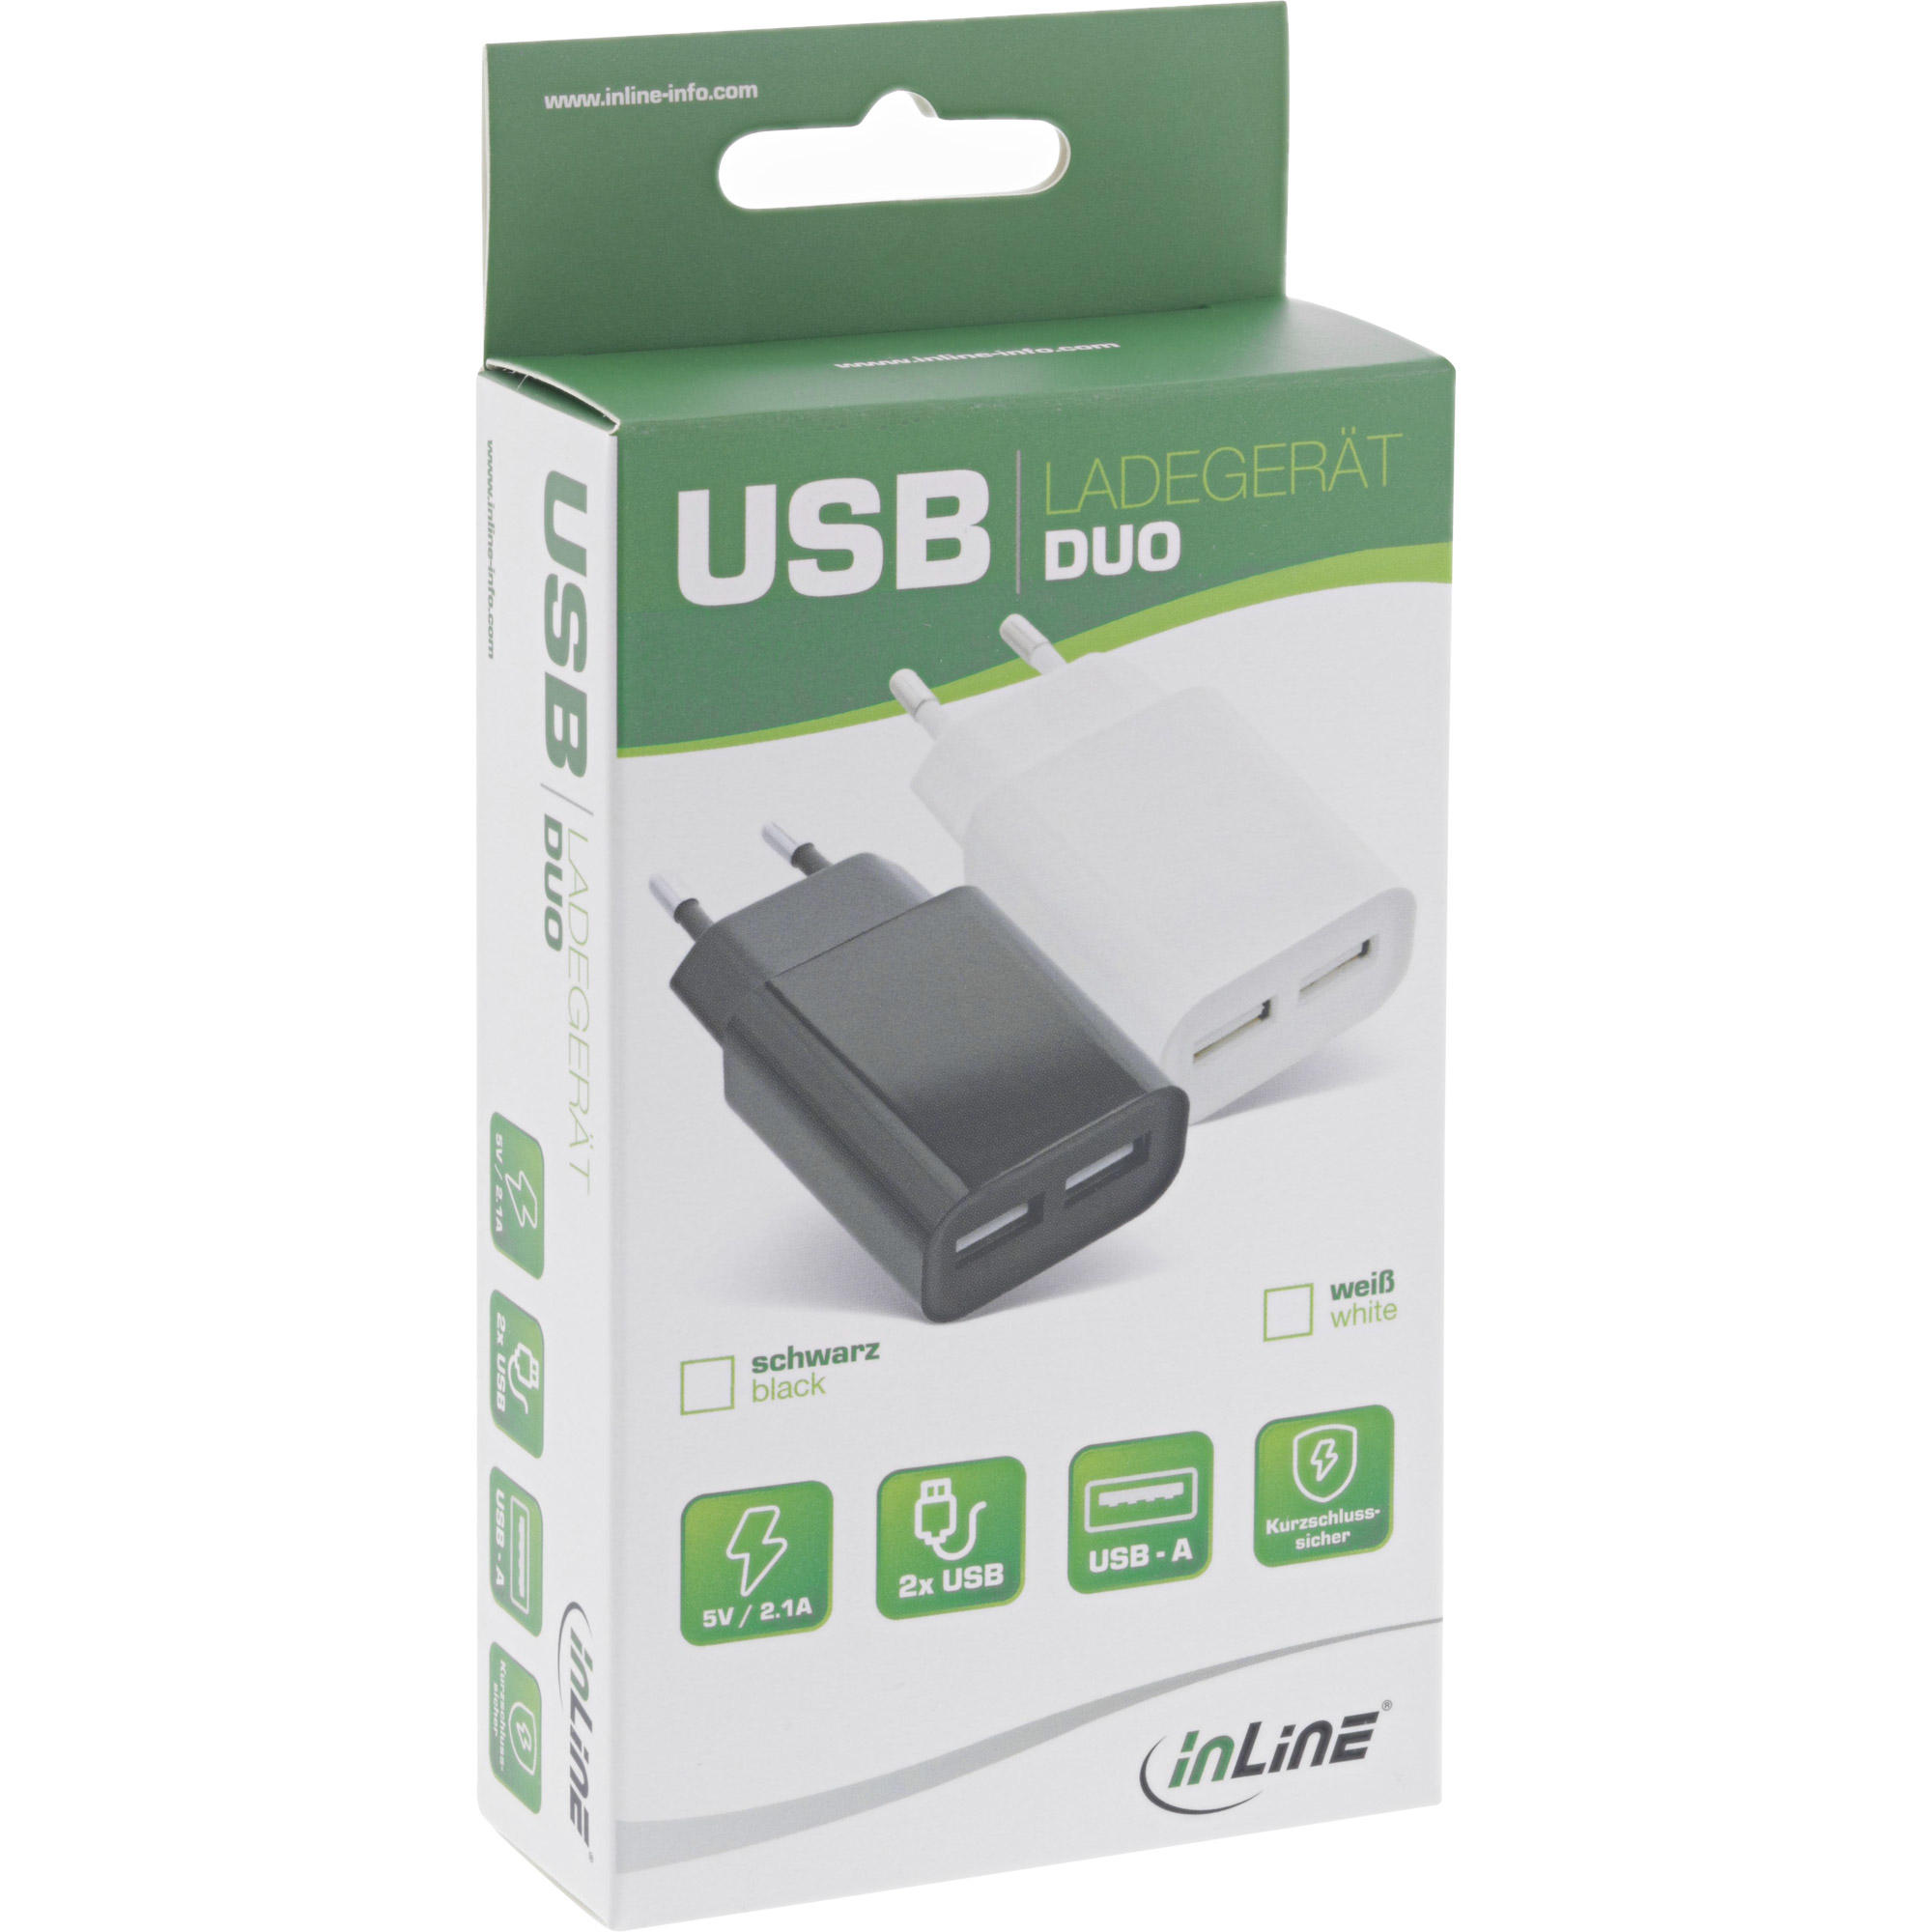 31503S INLINE INC USB Ladegert DUO - Netzteil 2-fach - 100-240V zu 5V/2.1A - schwarz